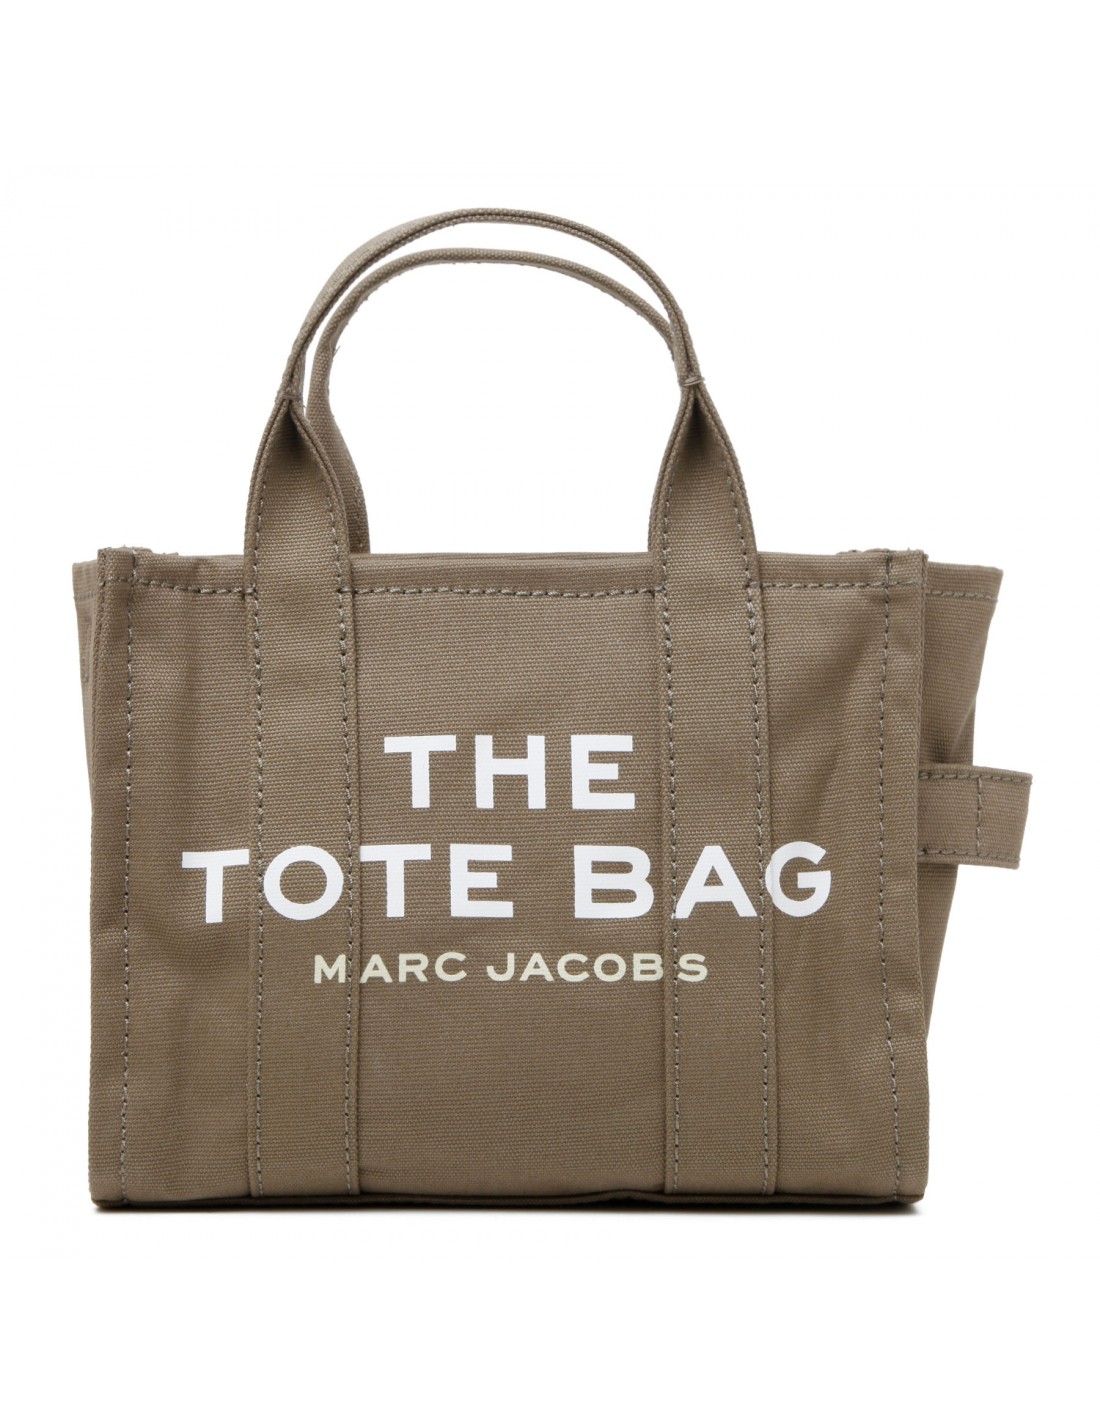 The mini tote bag  Le Noir - Unconventional Luxury